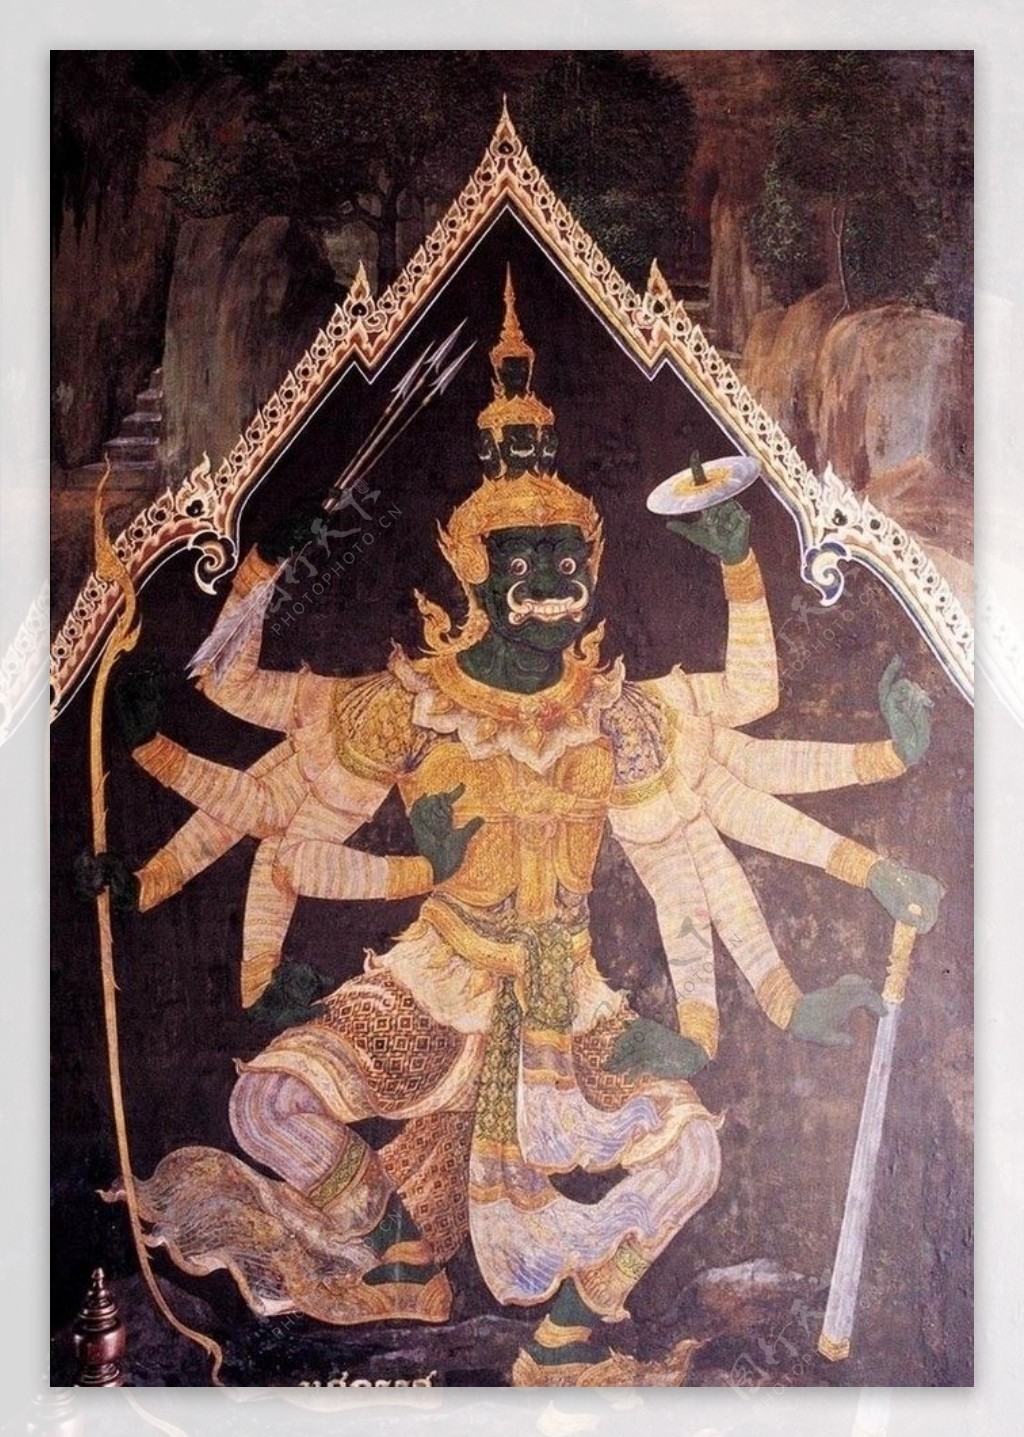 东南亚印度地区宗教及民间传说壁画100幅图片